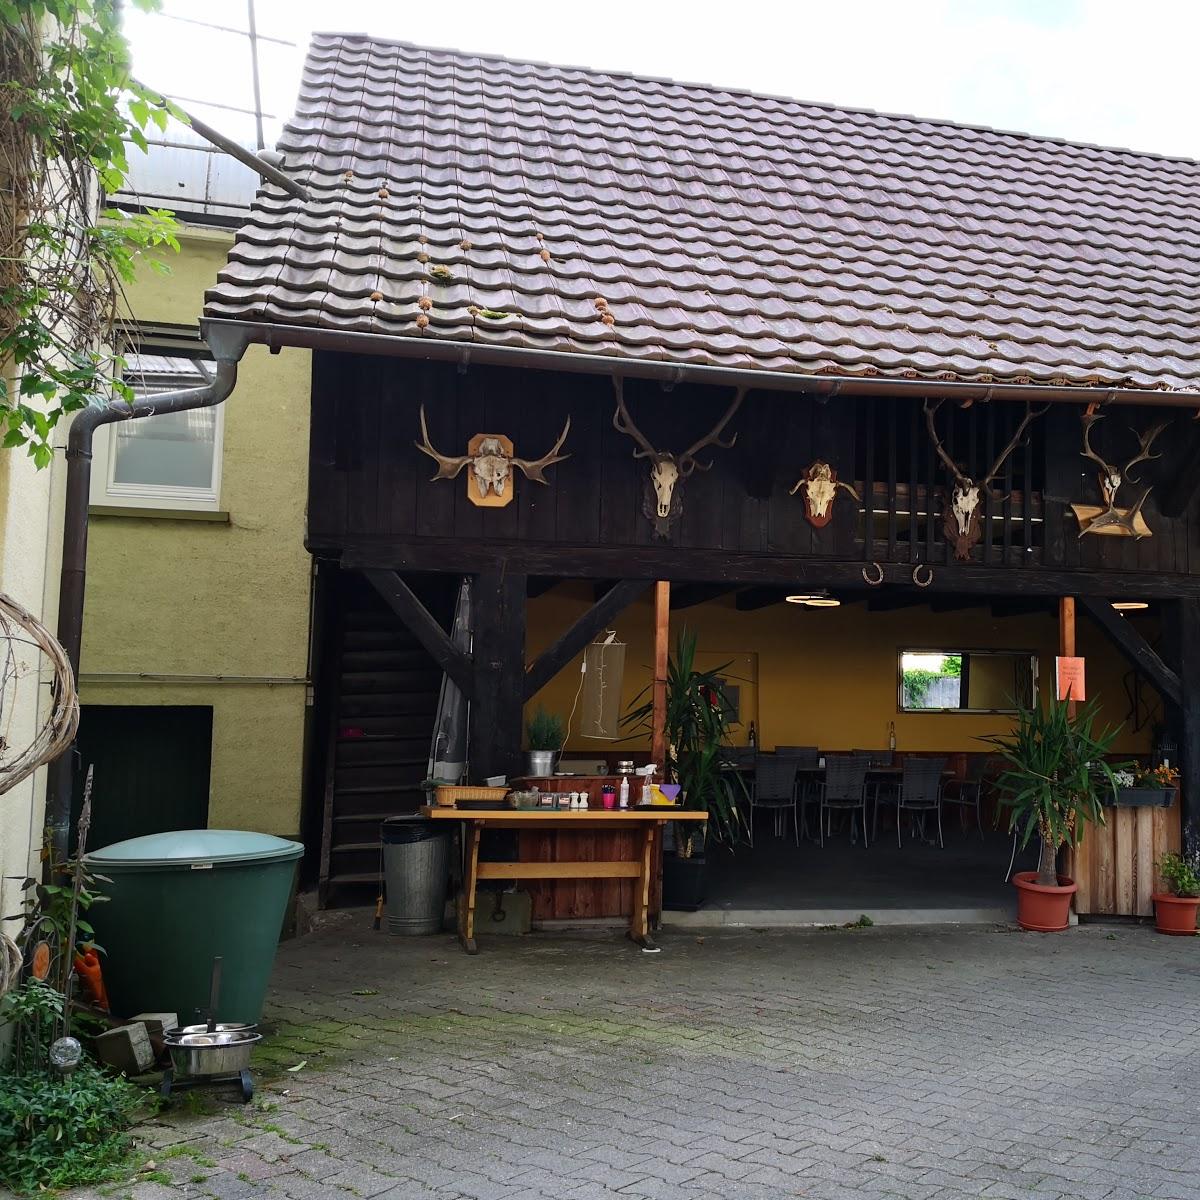 Restaurant "Landgasthof zur Sonne" in Auggen